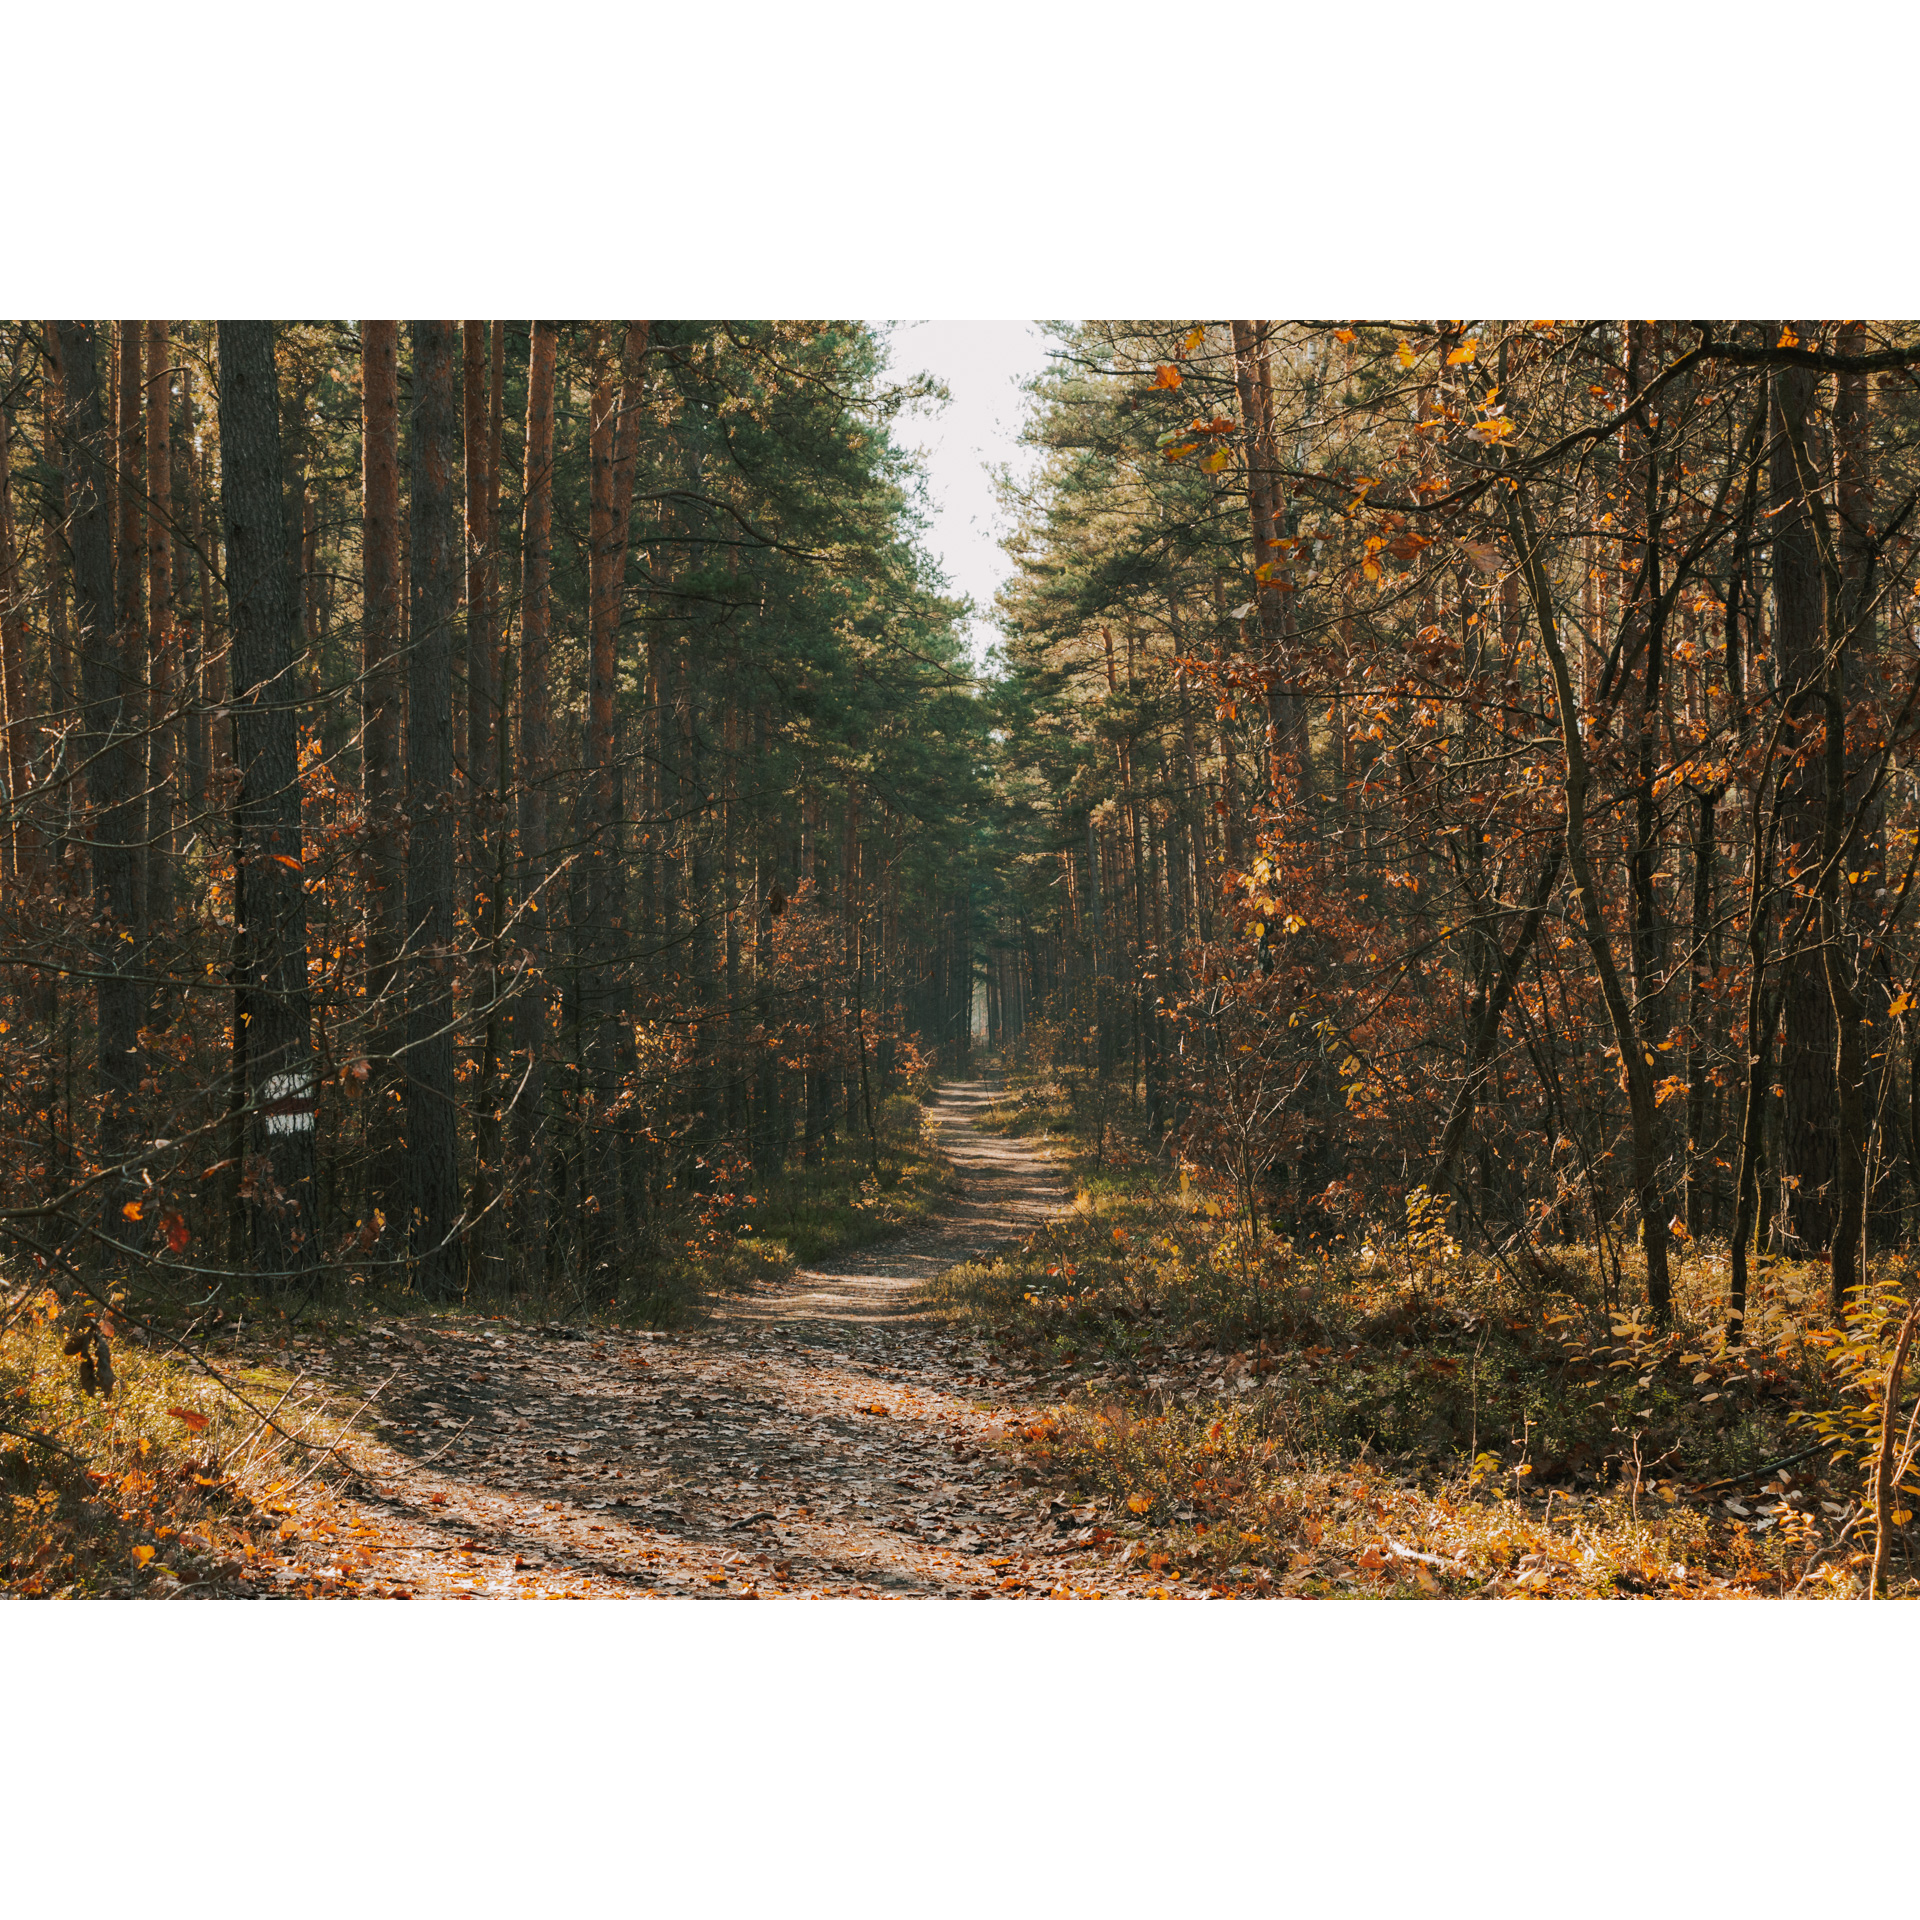 Piaszczysta droga leśna biegnąca między wysokimi drzewami w pomarańczowo-brązowo-zielonych barwach